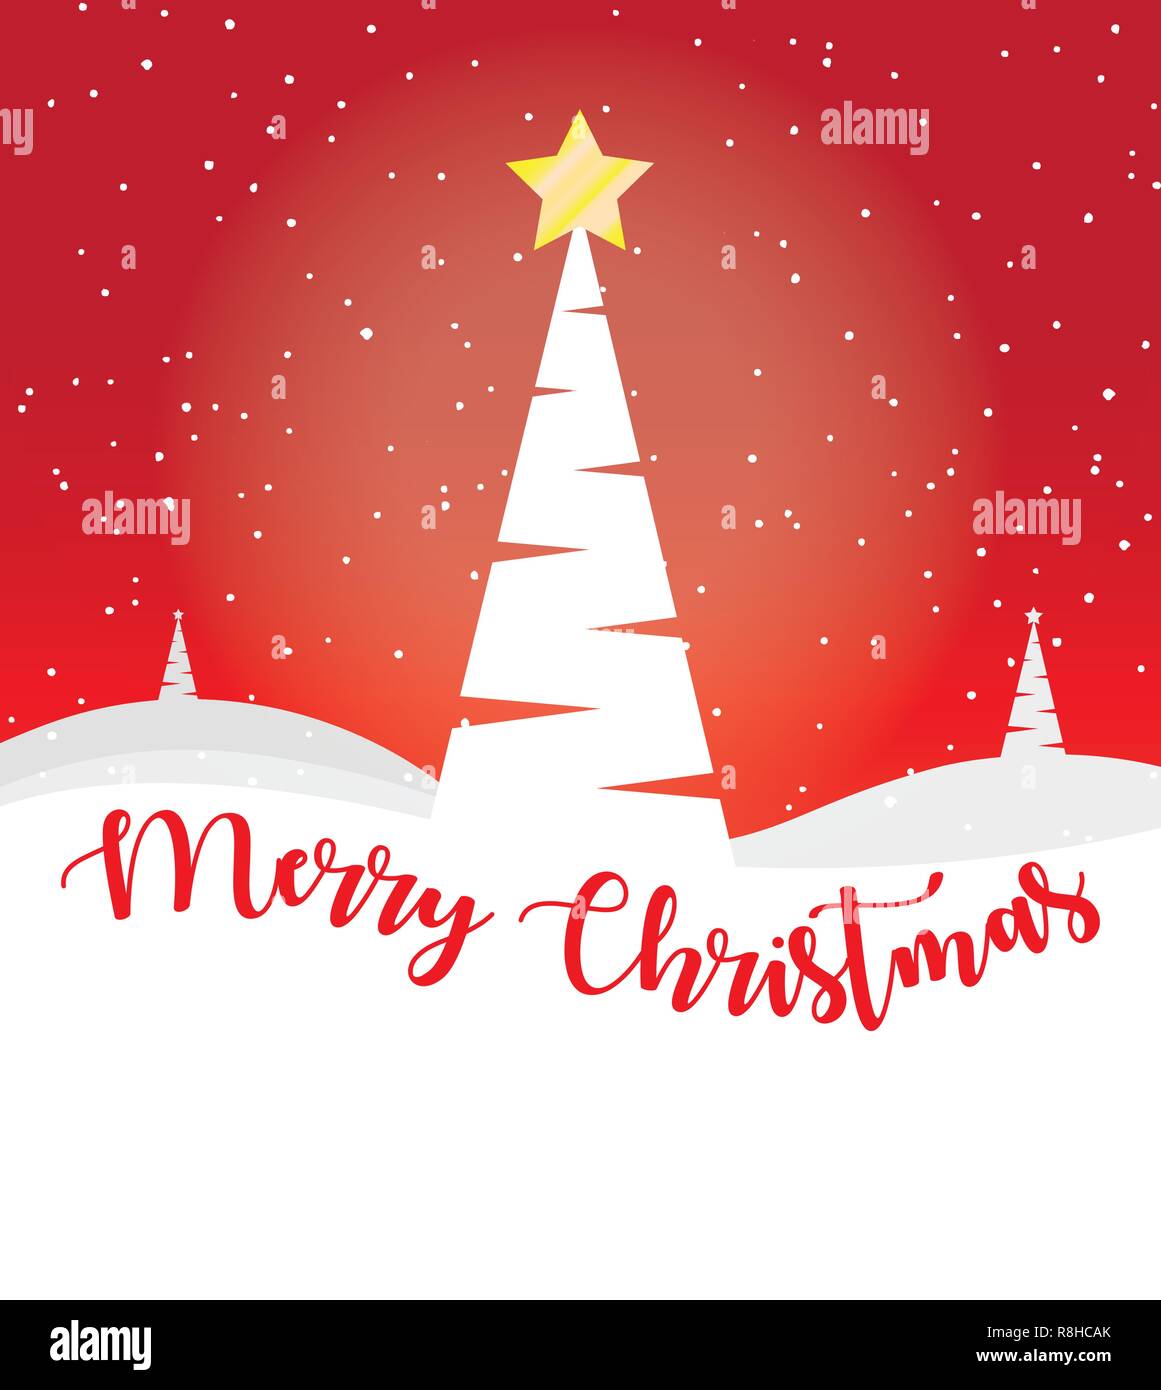 Weihnachten Grusskarten Mit Baum Und Frohe Weihnachten Text Stock Vektorgrafik Alamy